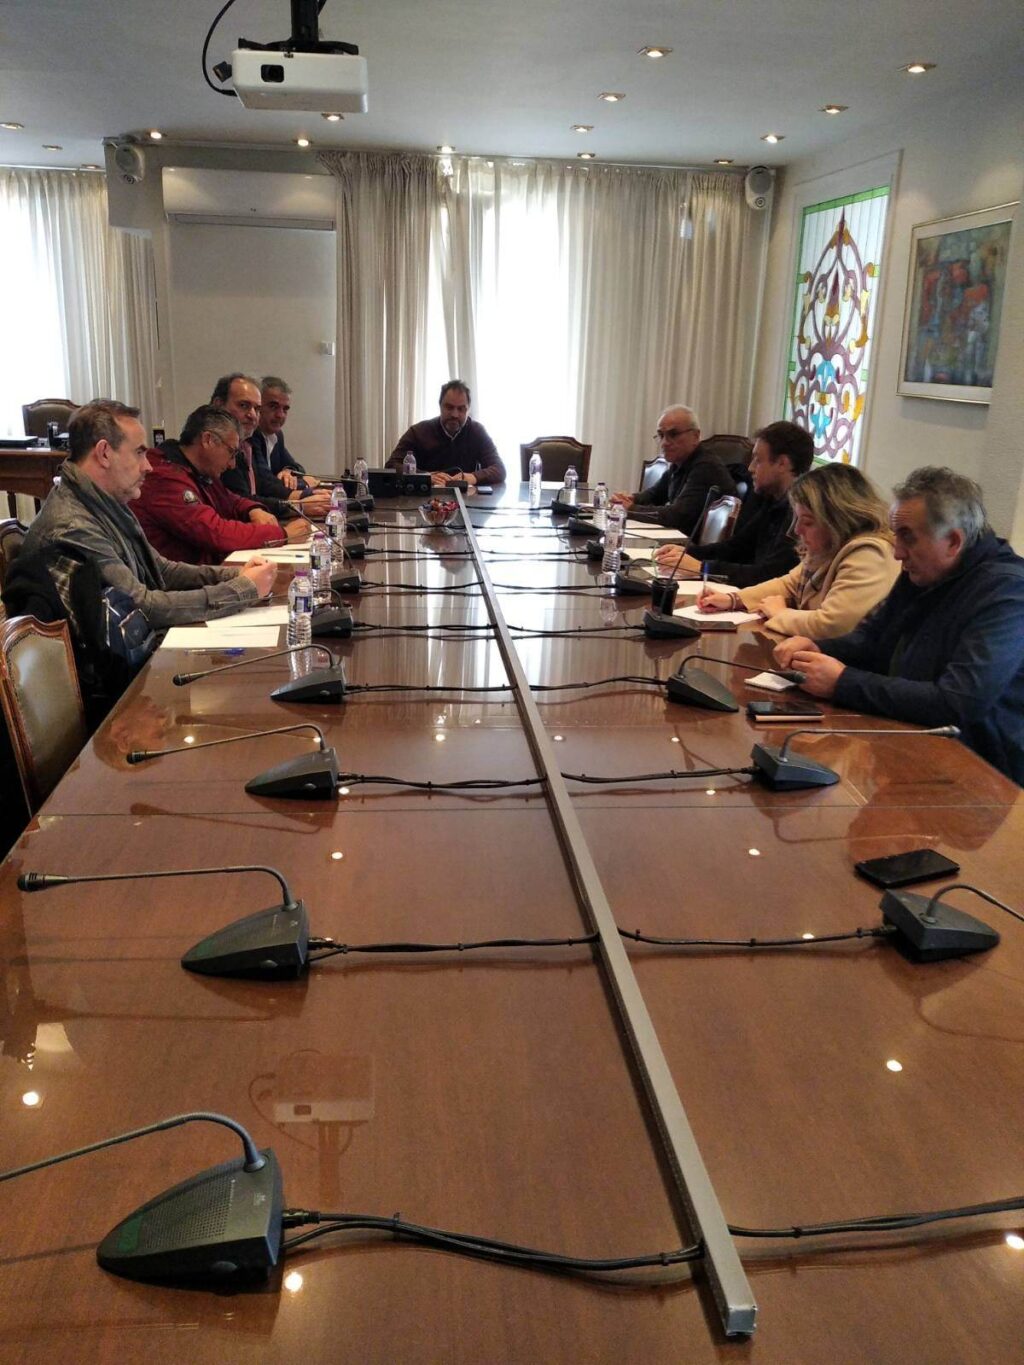 Πρώτη κοινή συνάντηση των τεσσάρων Επιμελητηρίων της ΠΔΜ με τη συμμετοχή εκπροσώπων του Πανεπιστημίου Δυτικής Μακεδονίας,  της διοίκησης του Περιφερειακού Ταμείου Ανάπτυξης ΔΜ και του Cluster  βιοοικονομίας και περιβάλλοντος της  Περιφέρειας Δυτικής Μακεδονίας 